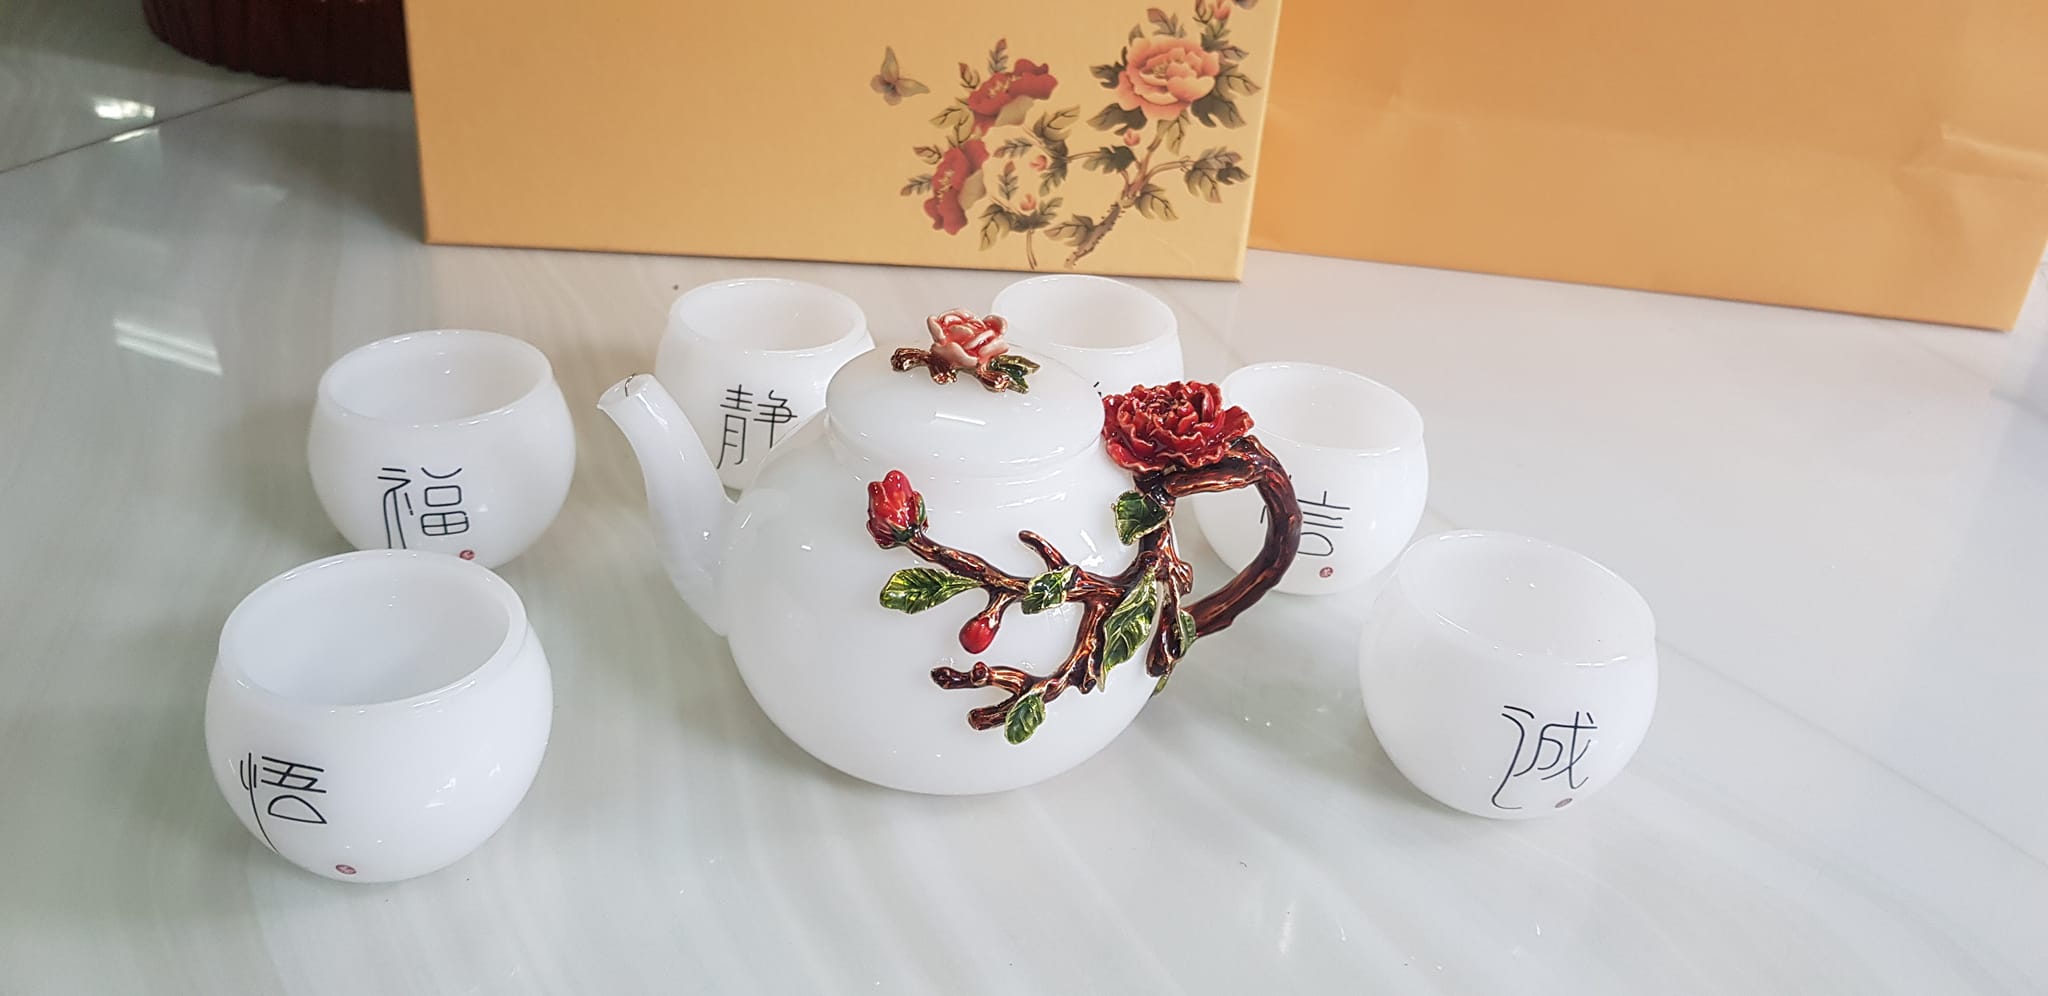 Bộ Bình Trà Chạm hoa đỏ kiểu rất đẹp đá mã não trắng tinh đẹp quá anh chị để phòng khách, công ty, quà biếu tặng Sếp tân gia người thân ý nghĩa ạ